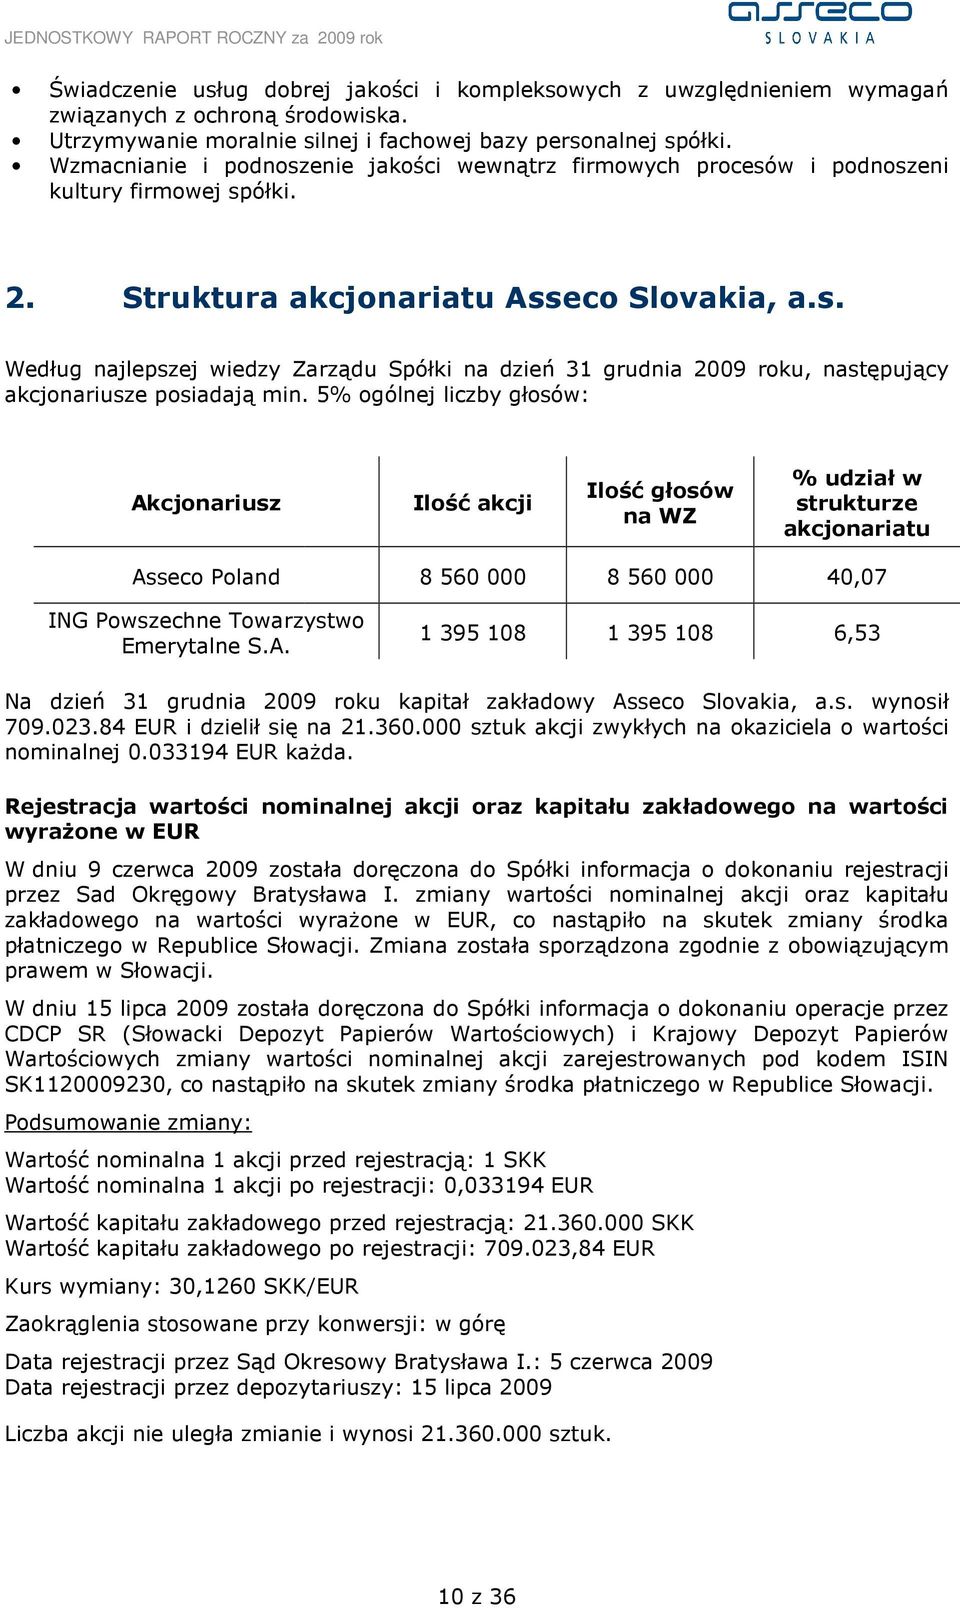 5% ogólnej liczby głosów: Akcjonariusz Ilość akcji Ilość głosów na WZ % udział w strukturze akcjonariatu Asseco Poland ING Powszechne Towarzystwo Emerytalne S.A. 8 560 000 8 560 000 1 395 108 1 395 108 40,07 6,53 Na dzień 31 grudnia 2009 roku kapitał zakładowy Asseco Slovakia, a.